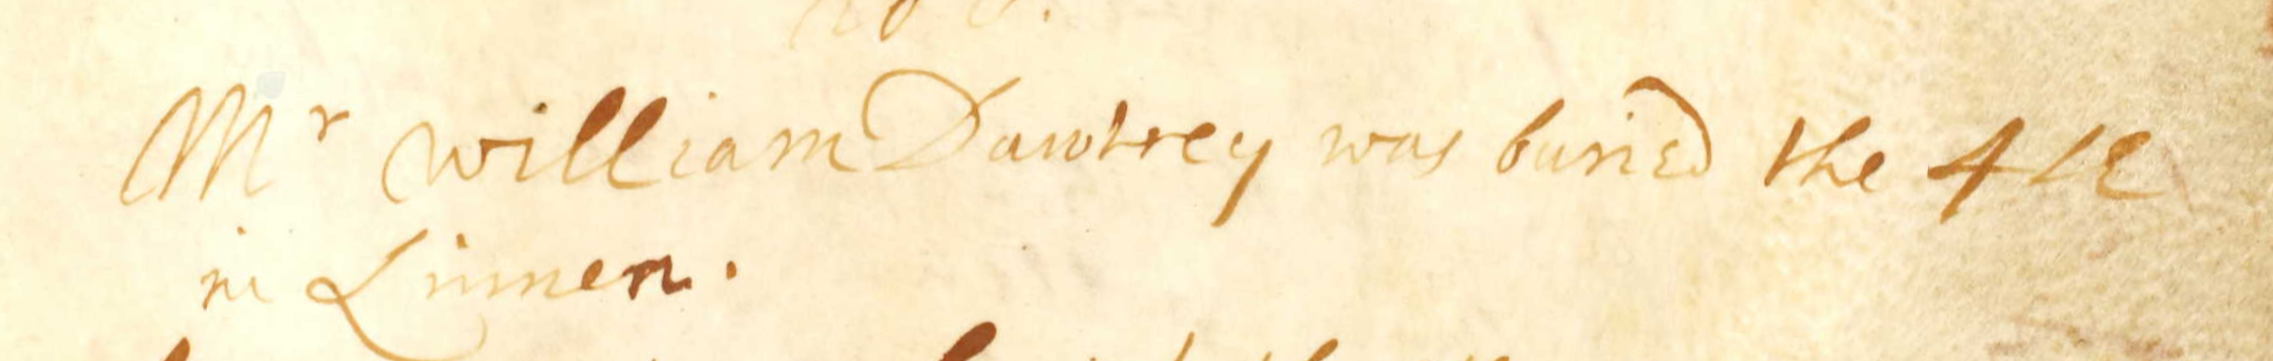 Figure 5: Burial Register entry for William Dawtrey